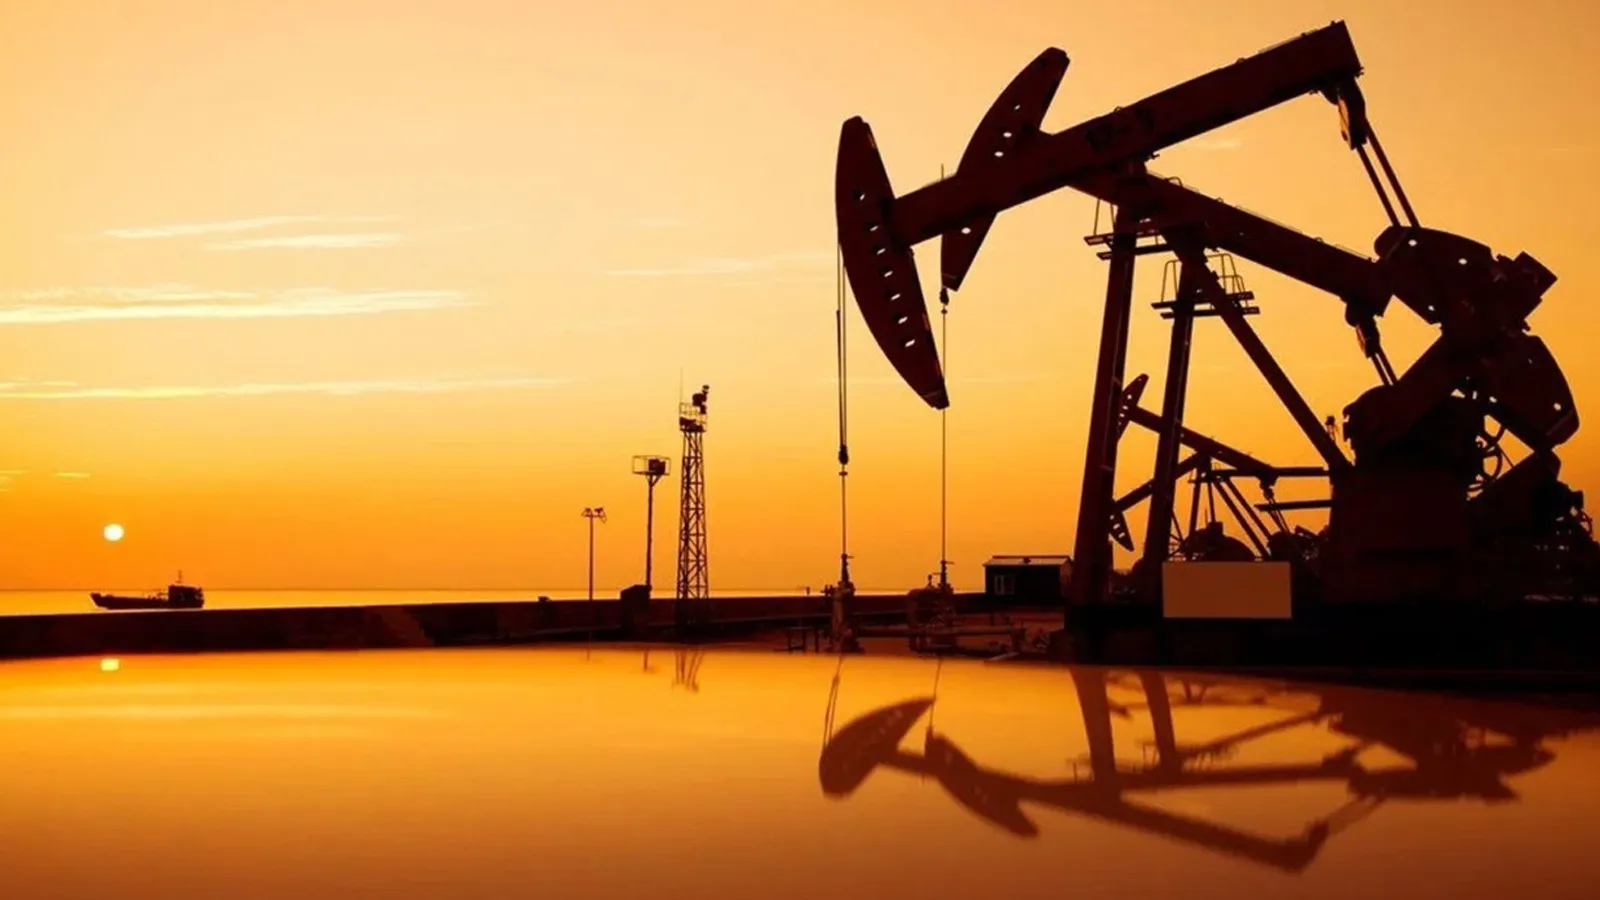 Brent petrolün fiyatı 78,34 dolar seviyesinde